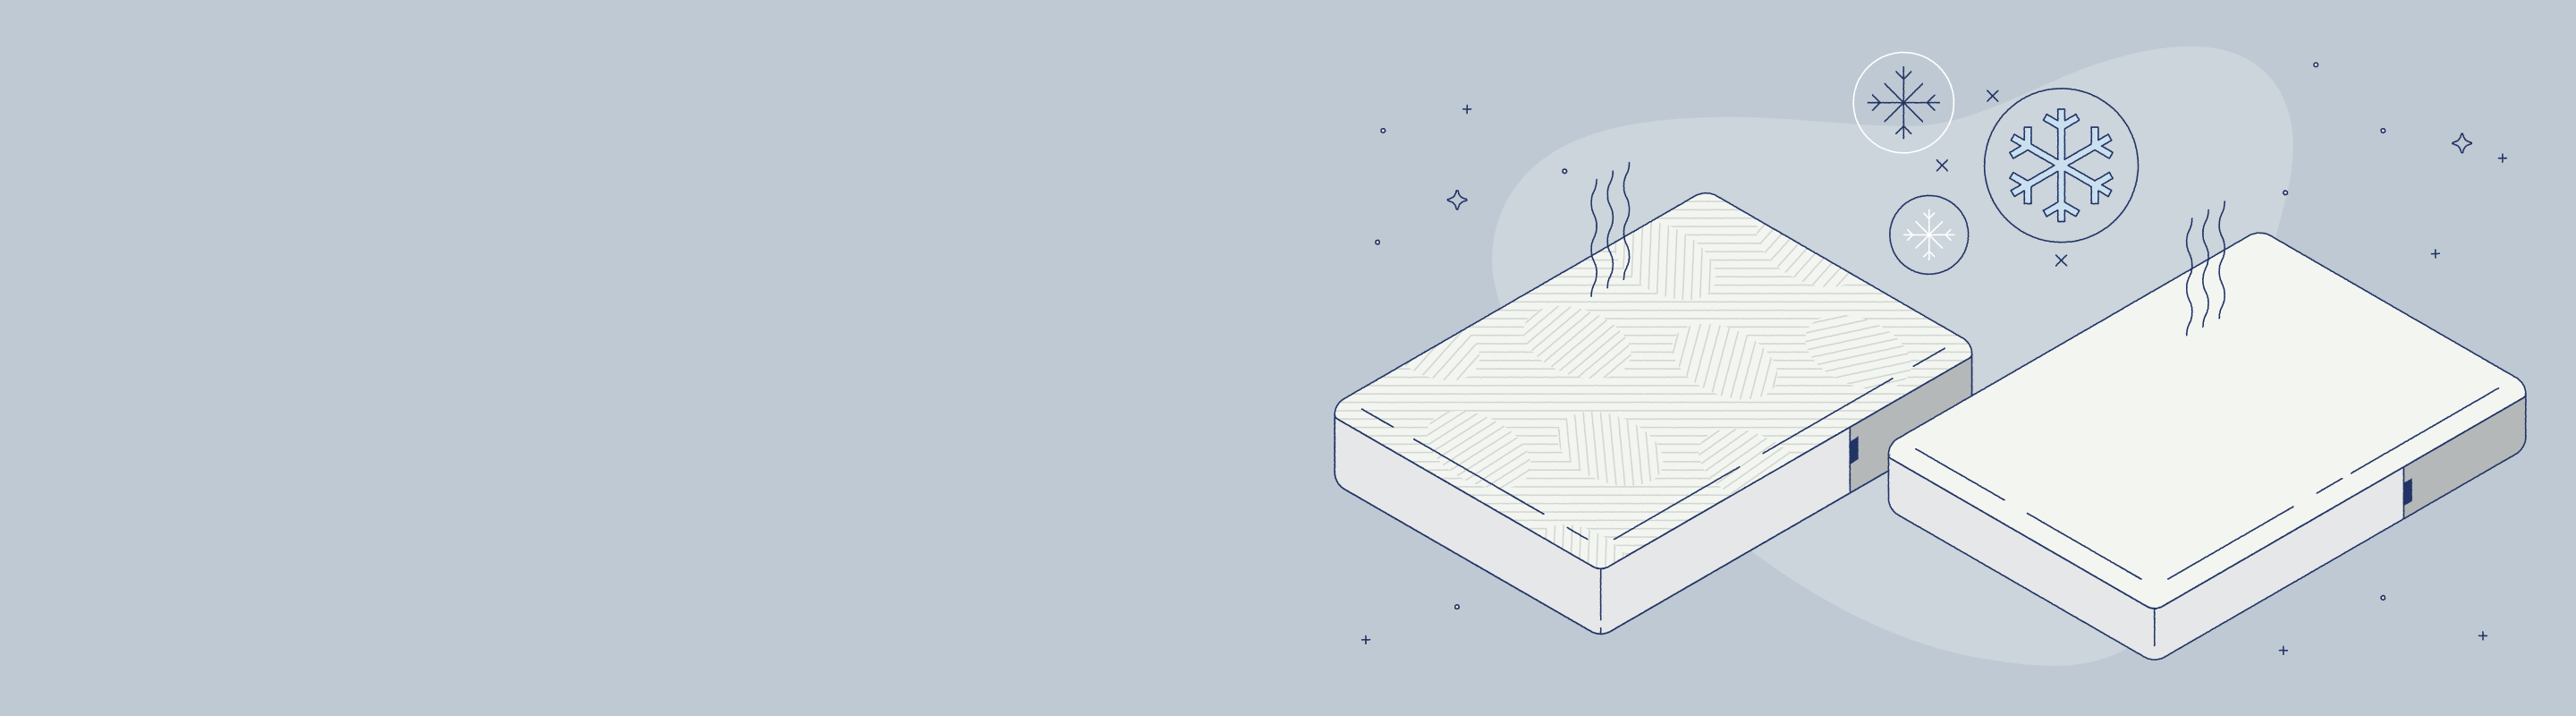 best cooling mattress